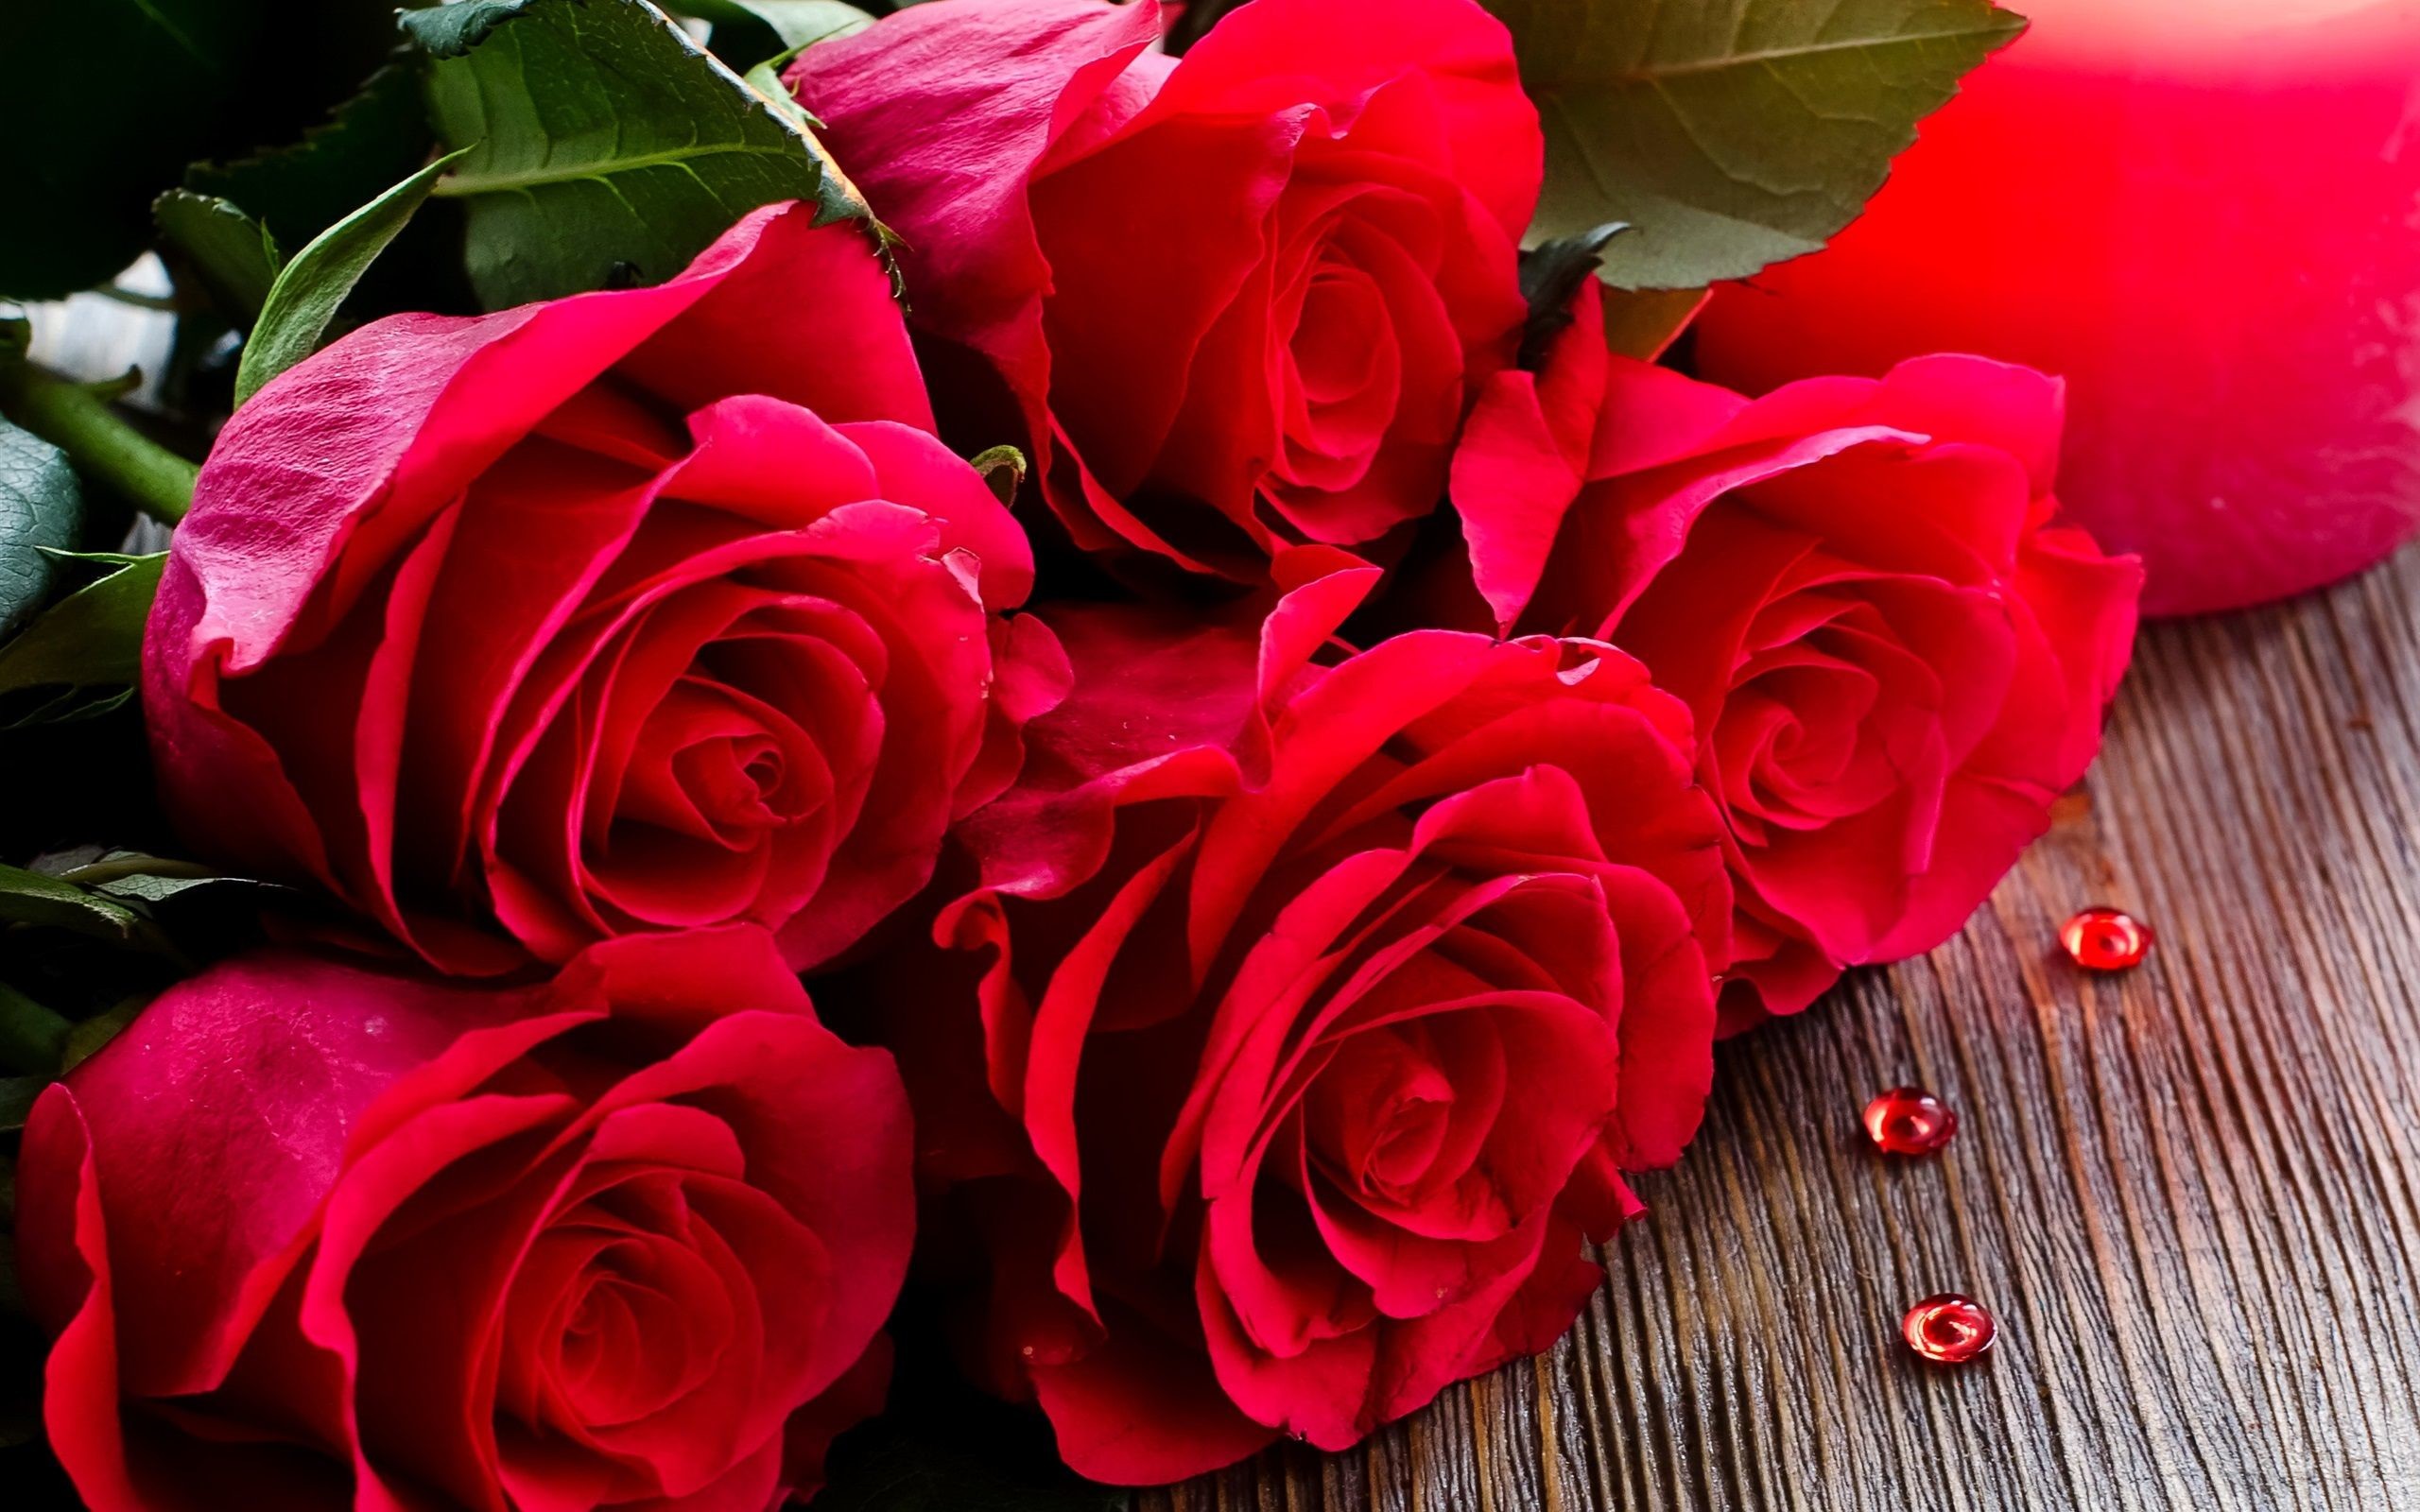 2560x1600 roses bouquet hd wallpaper Rose Wallpaper Pinterest